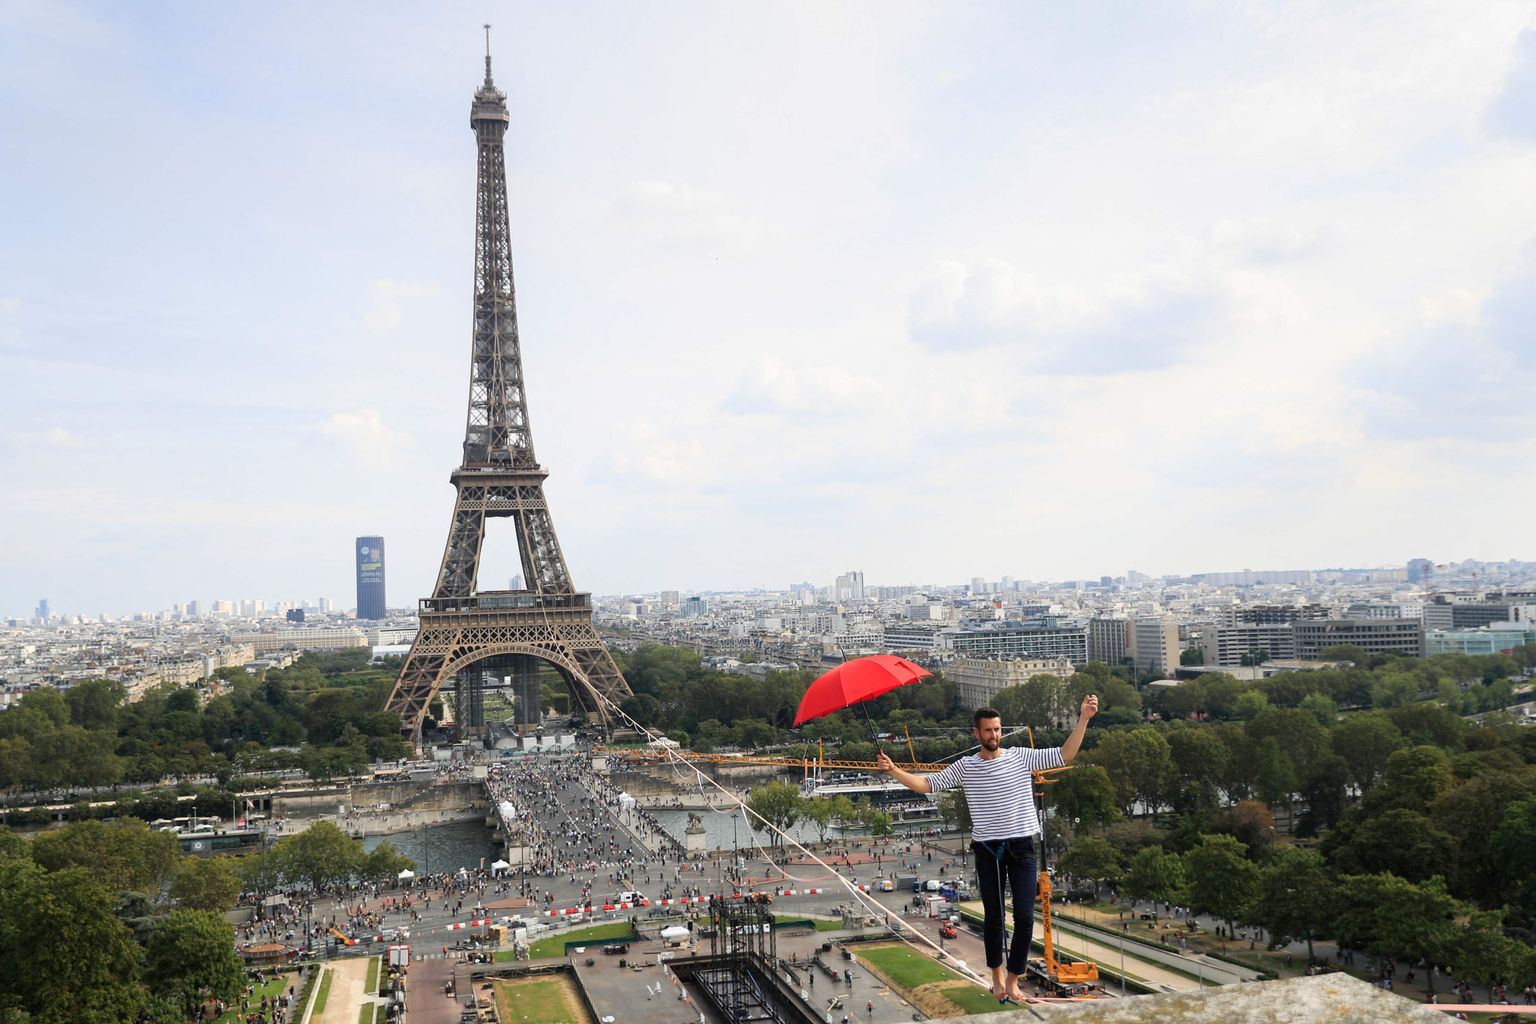 Prantsuse köielkõndija Nathan Paulin ületas 670-meetrise köie, mis oli pandud Eiffeli torni ja Theatre National de Chaillot' vahele. Ta oli 70 meetri kõrgusel. Etteaste leidis aset 19. septembril 2021